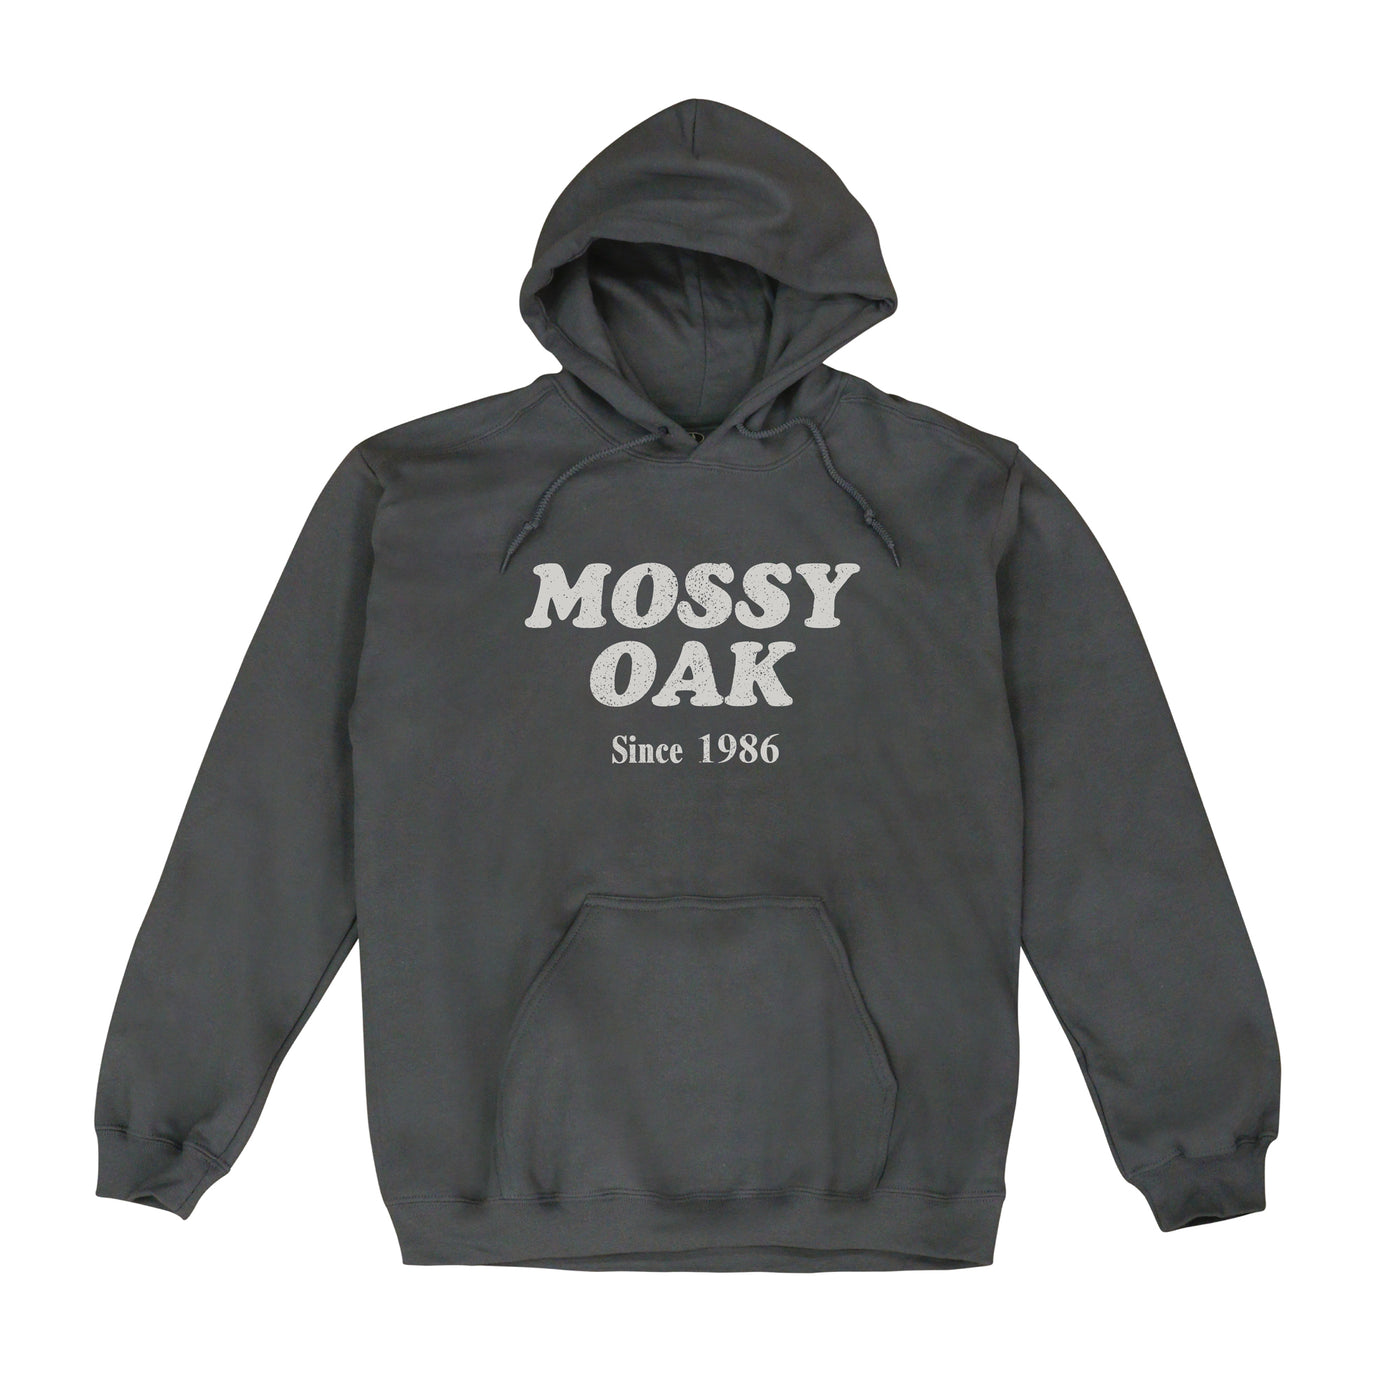 Mossy Oak Est 1986 Hoodie